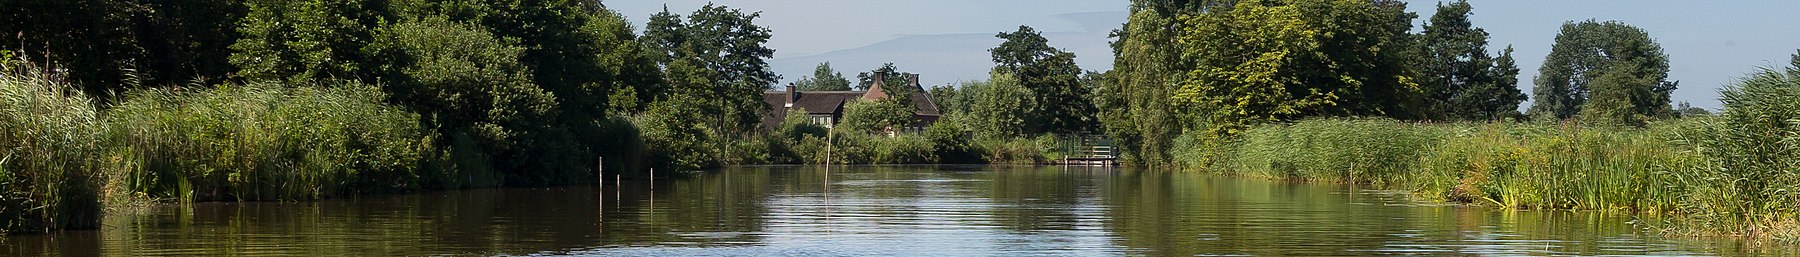 Woerdense Verlaat, rieka Meije v blízkosti Boswegu foto12 2017-07-09 11.01 pagebanner.jpg